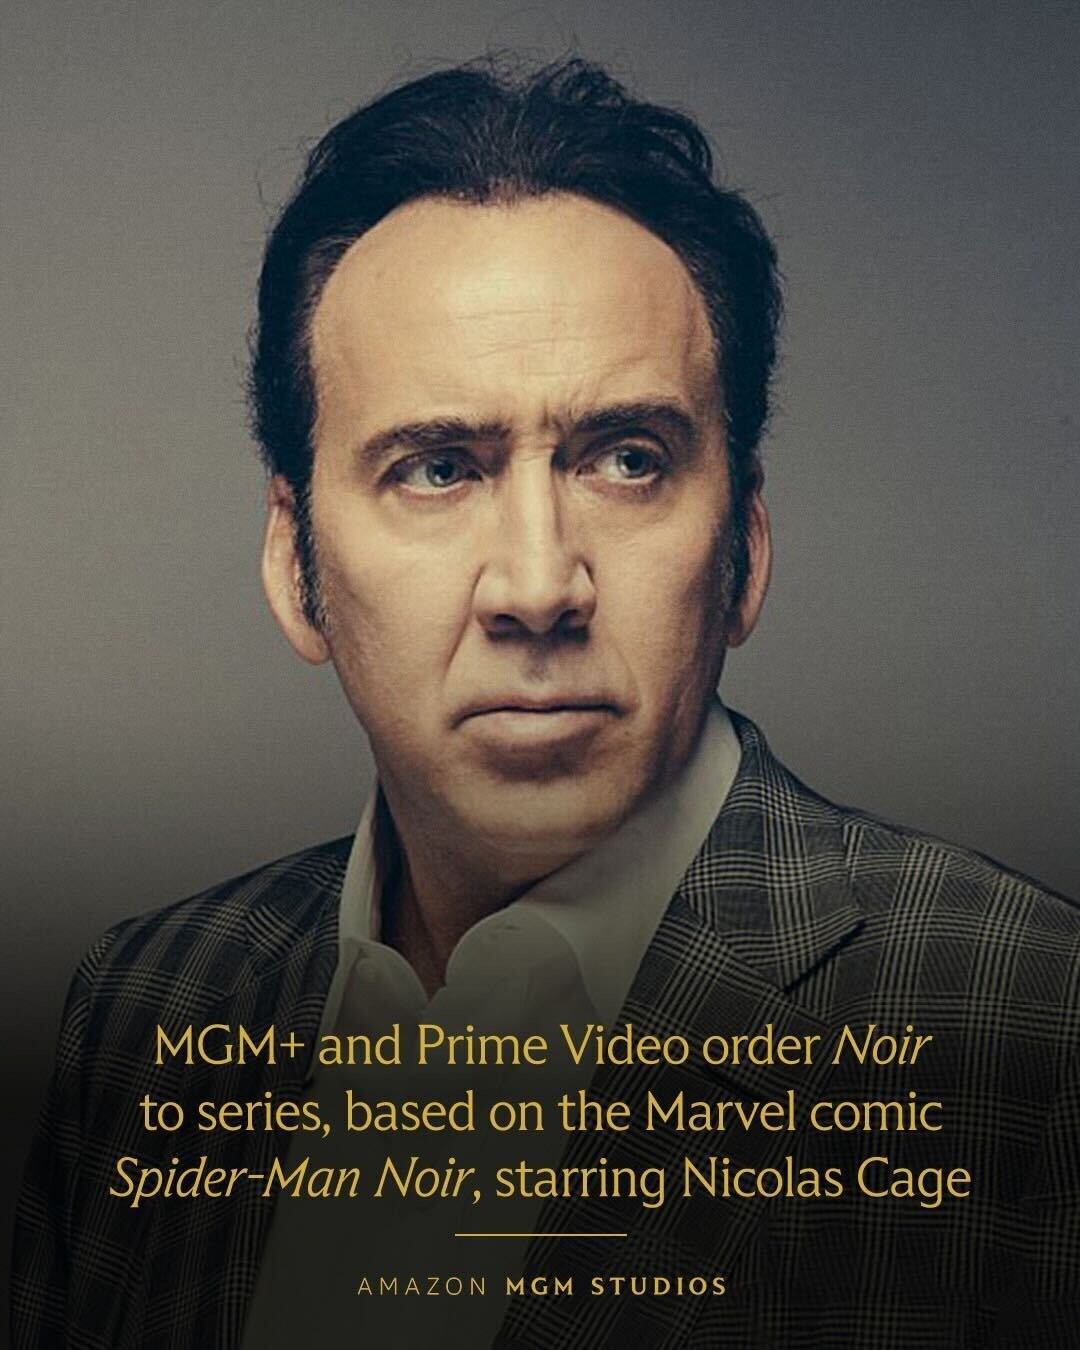 Prime Video confirmó el papel de Nicolas Cage como Spider-Man Noir mediante una publicación en la red social X.